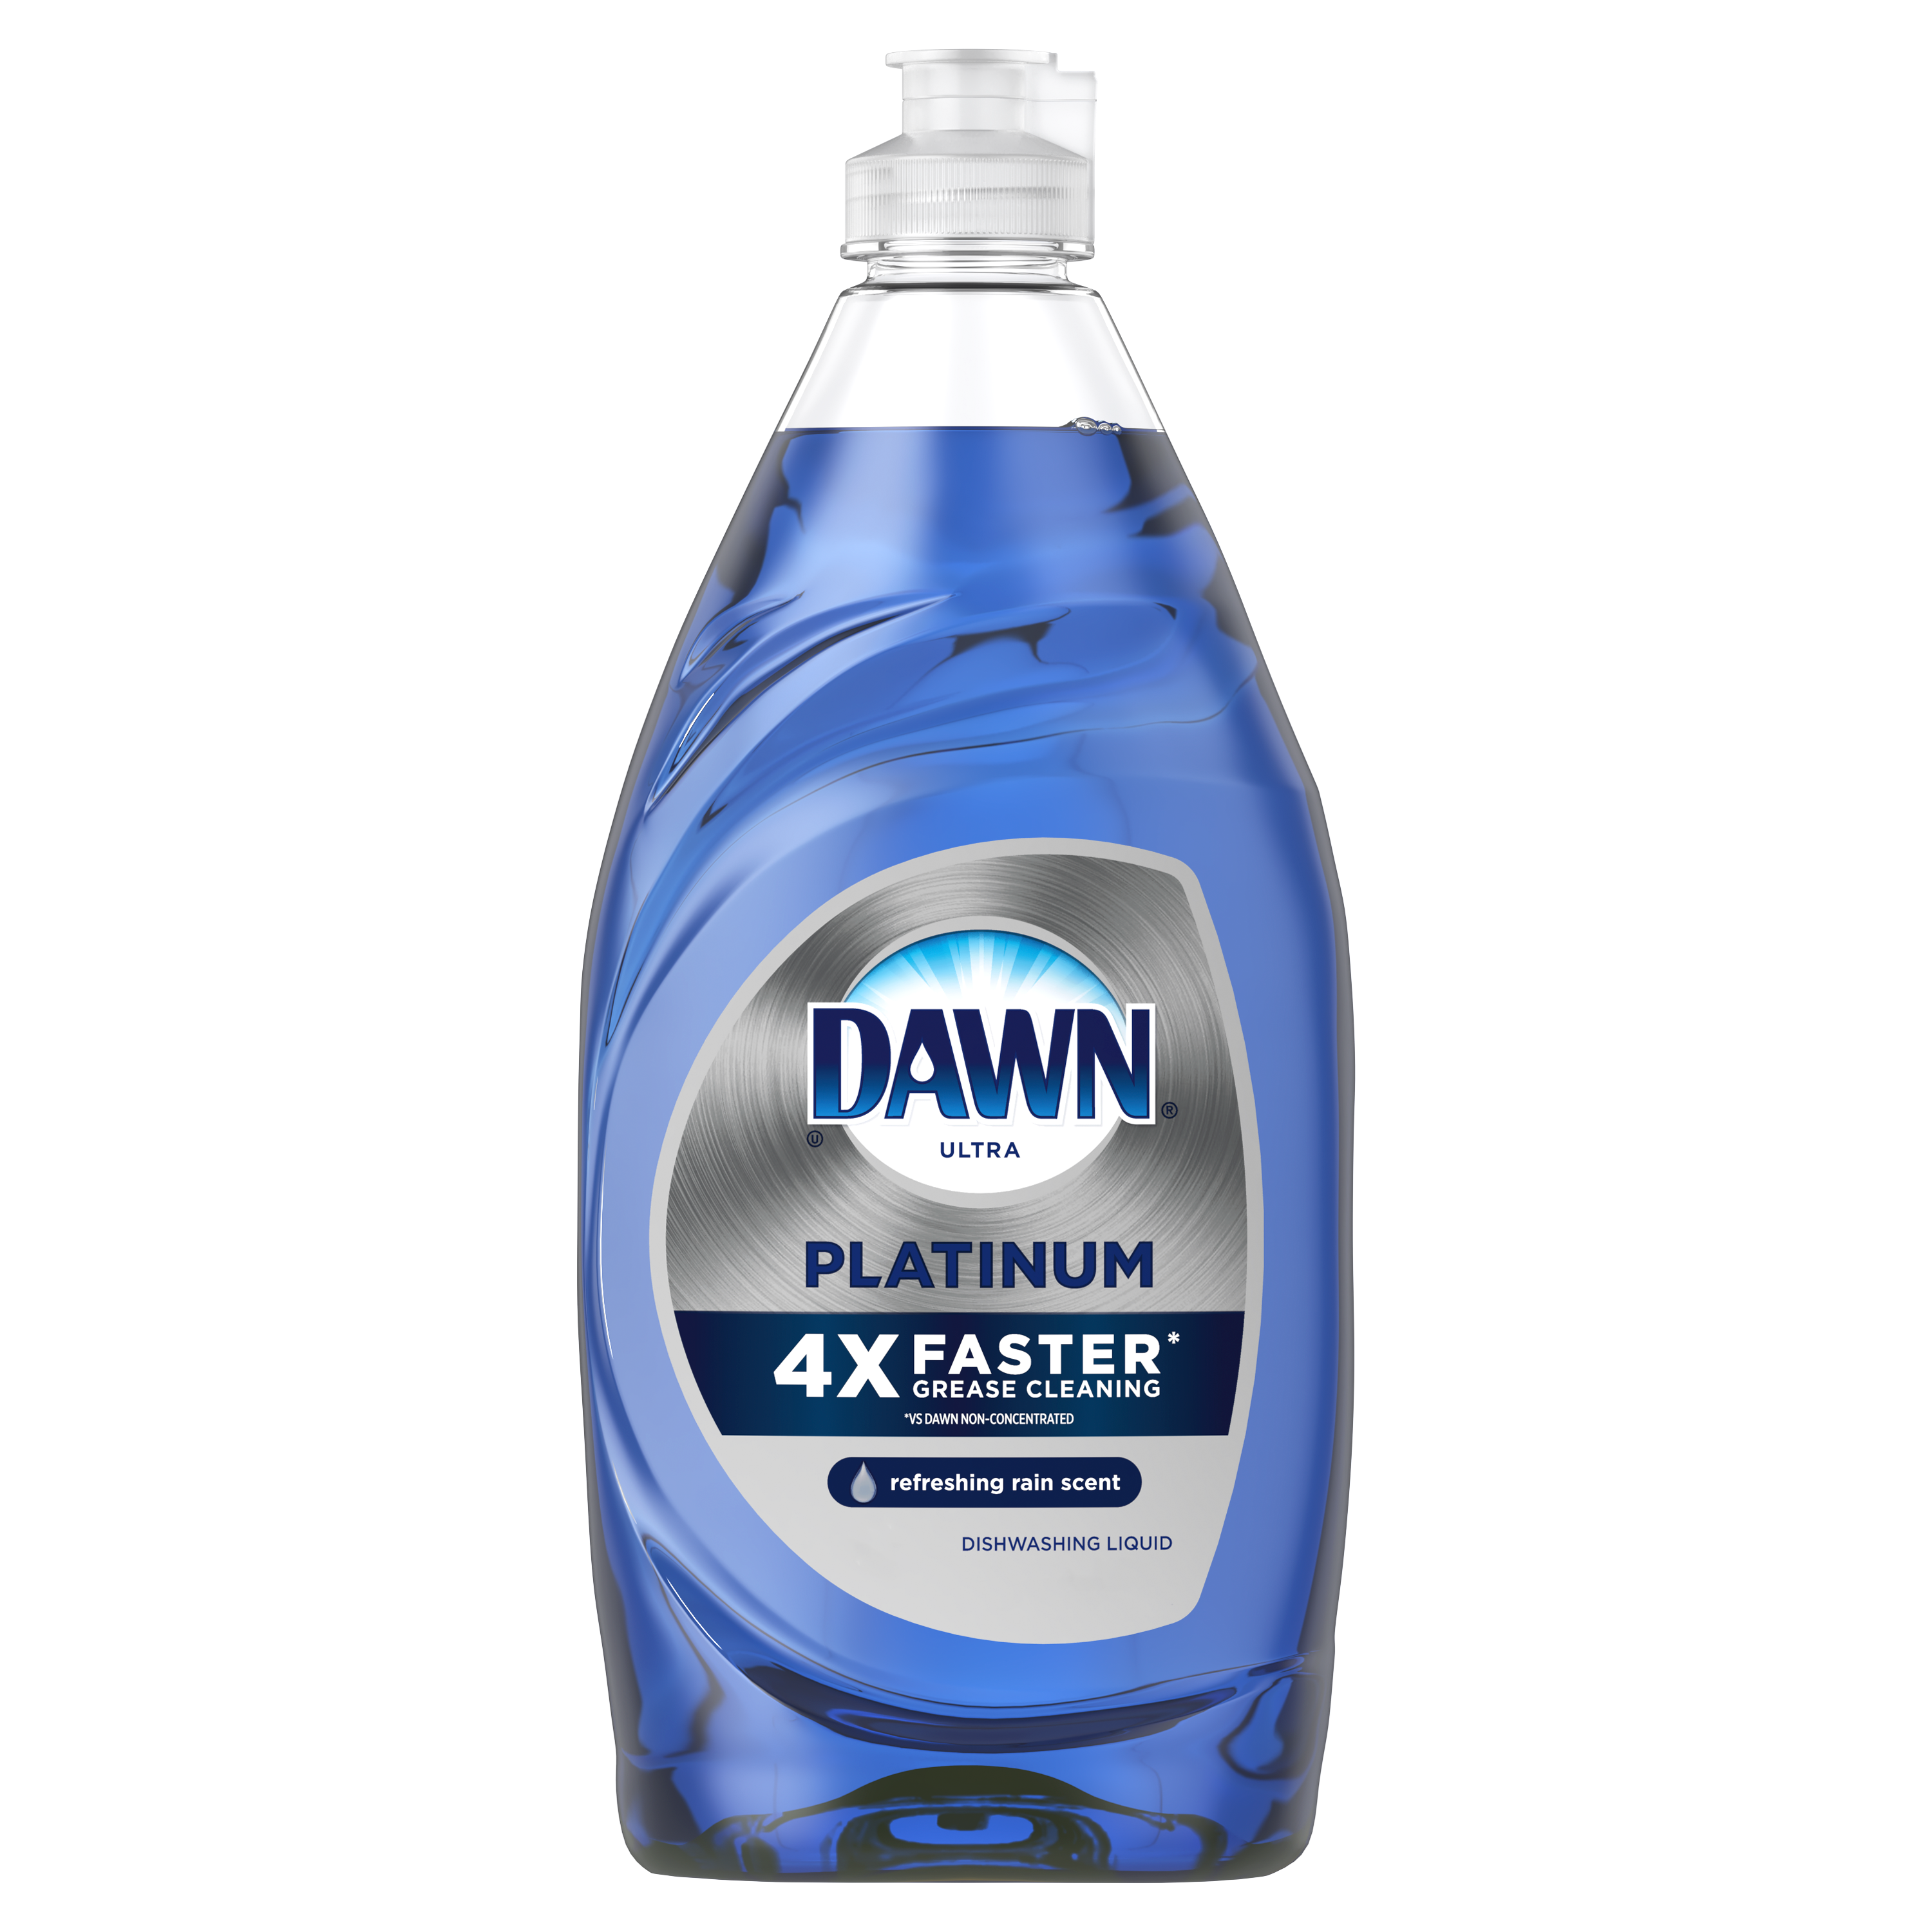 Dawn Platinum Dishwashing Liquid, Refreshing Rain